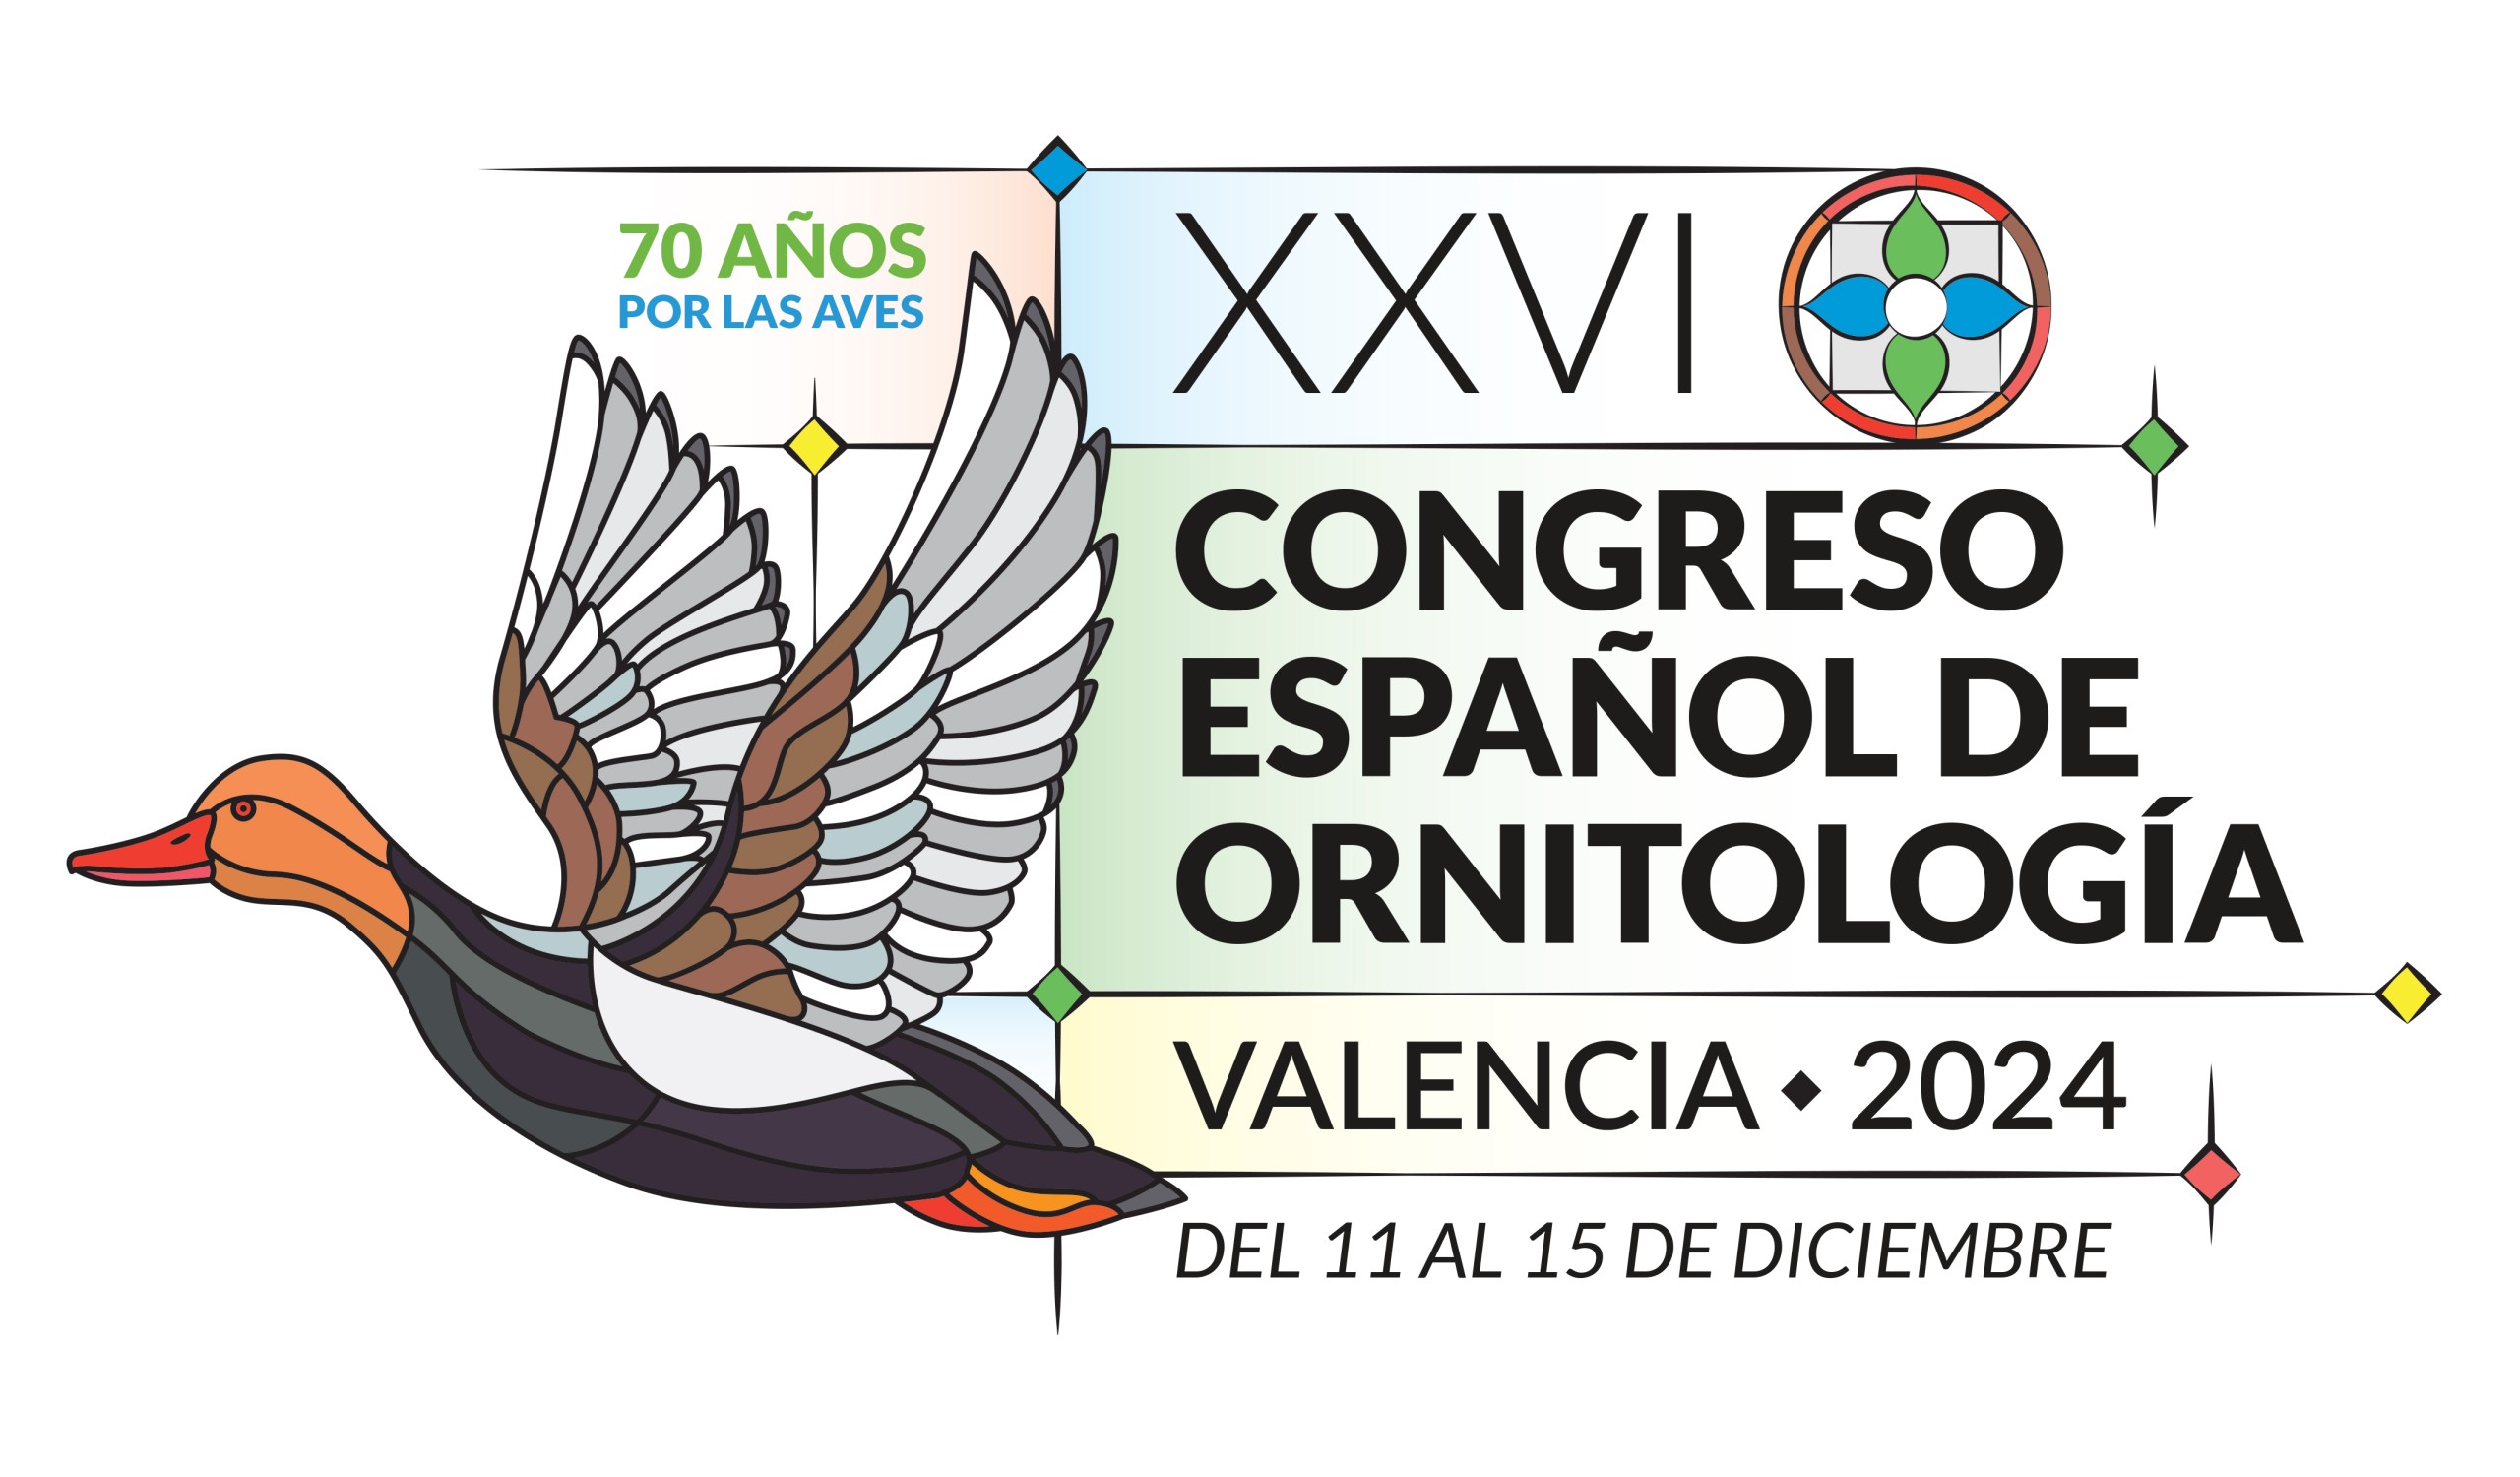 XXVI Congreso Español de Ornitología